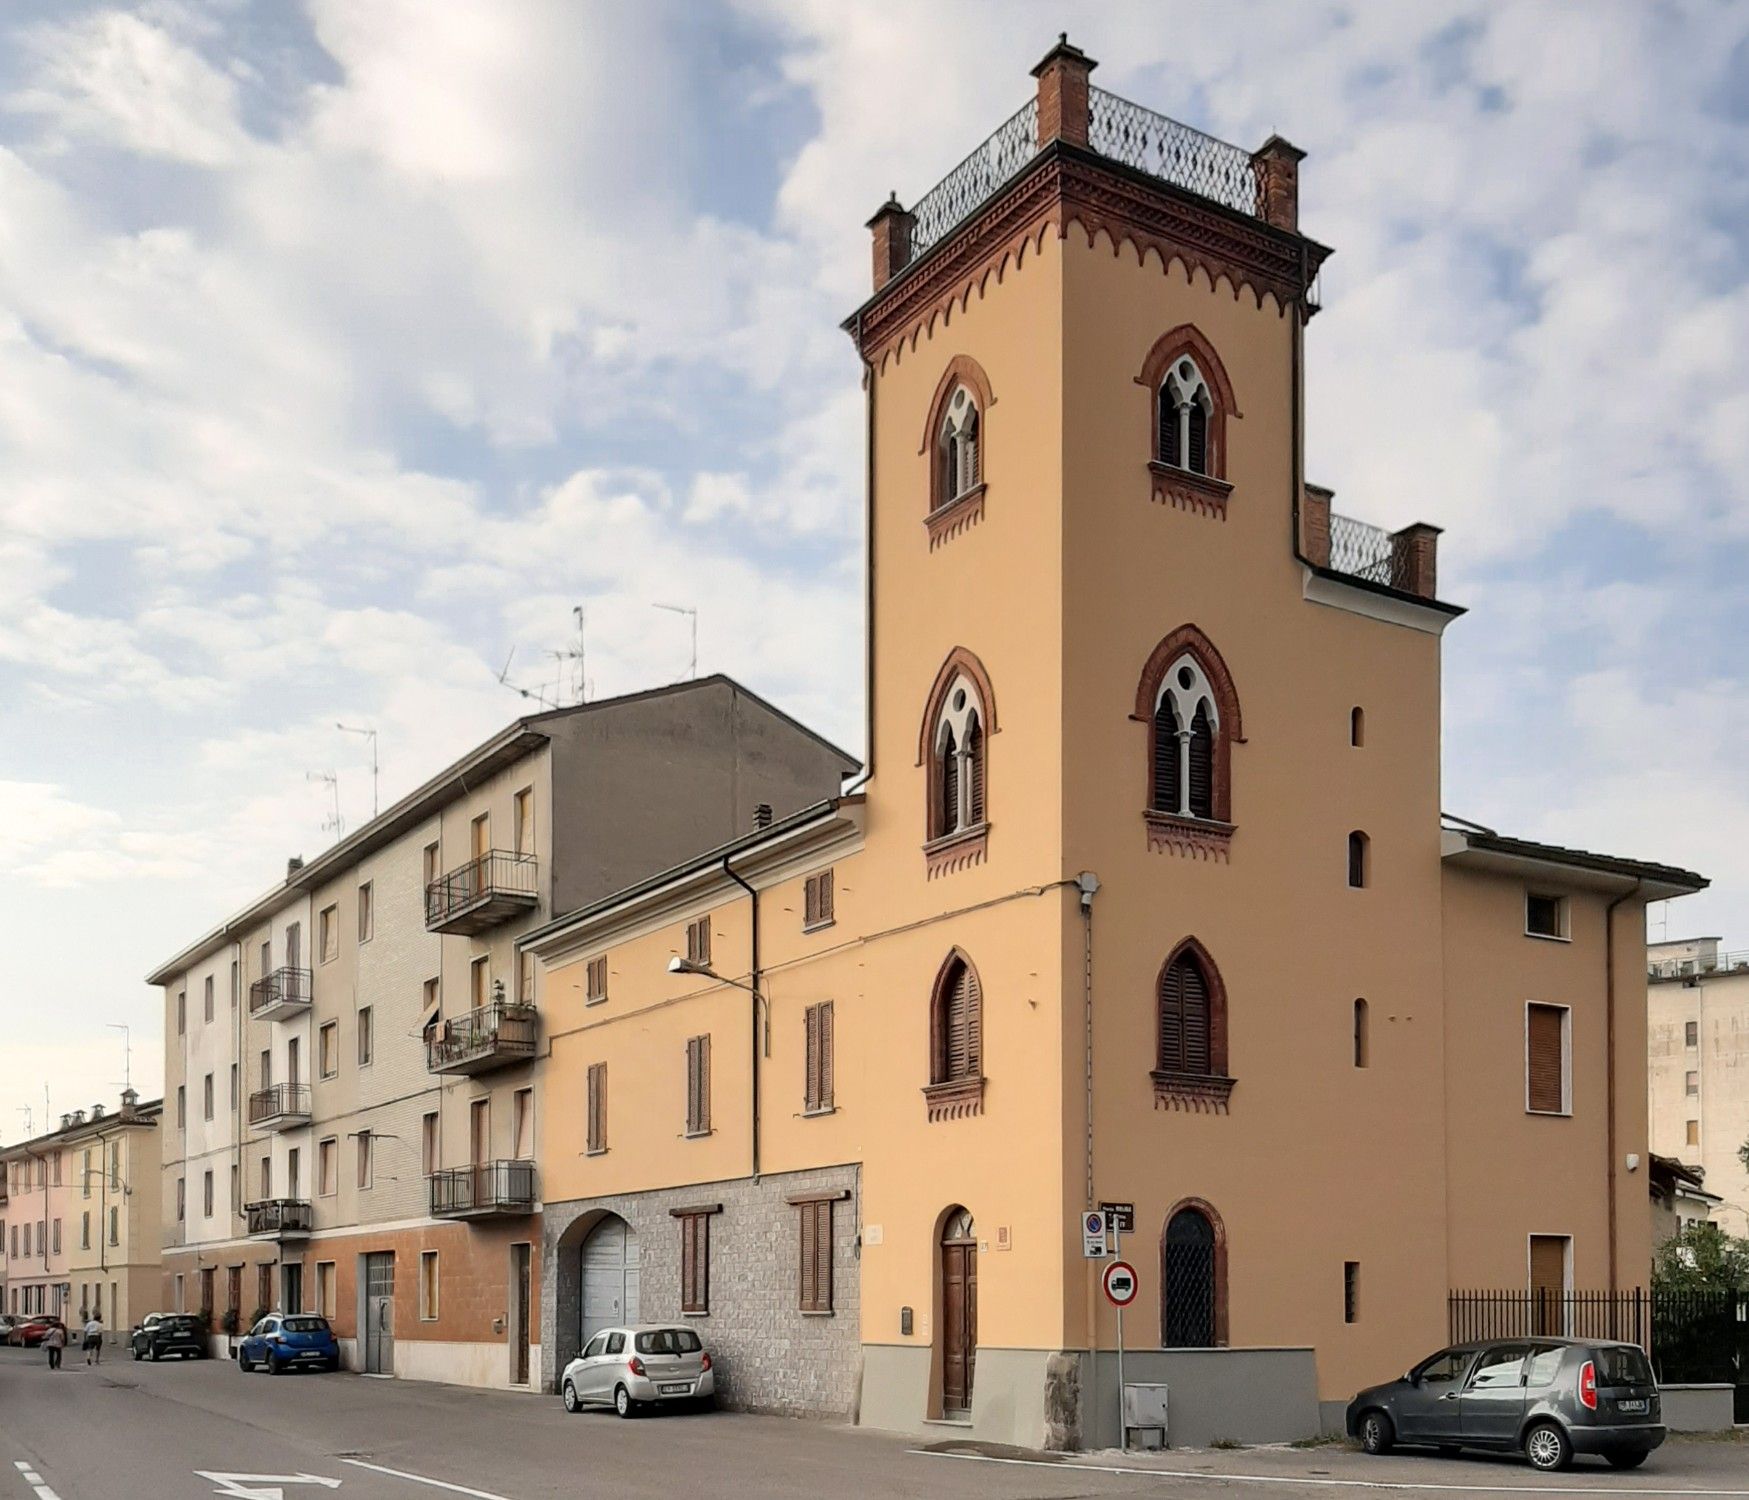 Obrázky Palazzo Sanseverino - nemovitost spojená s Leonardem da Vinci